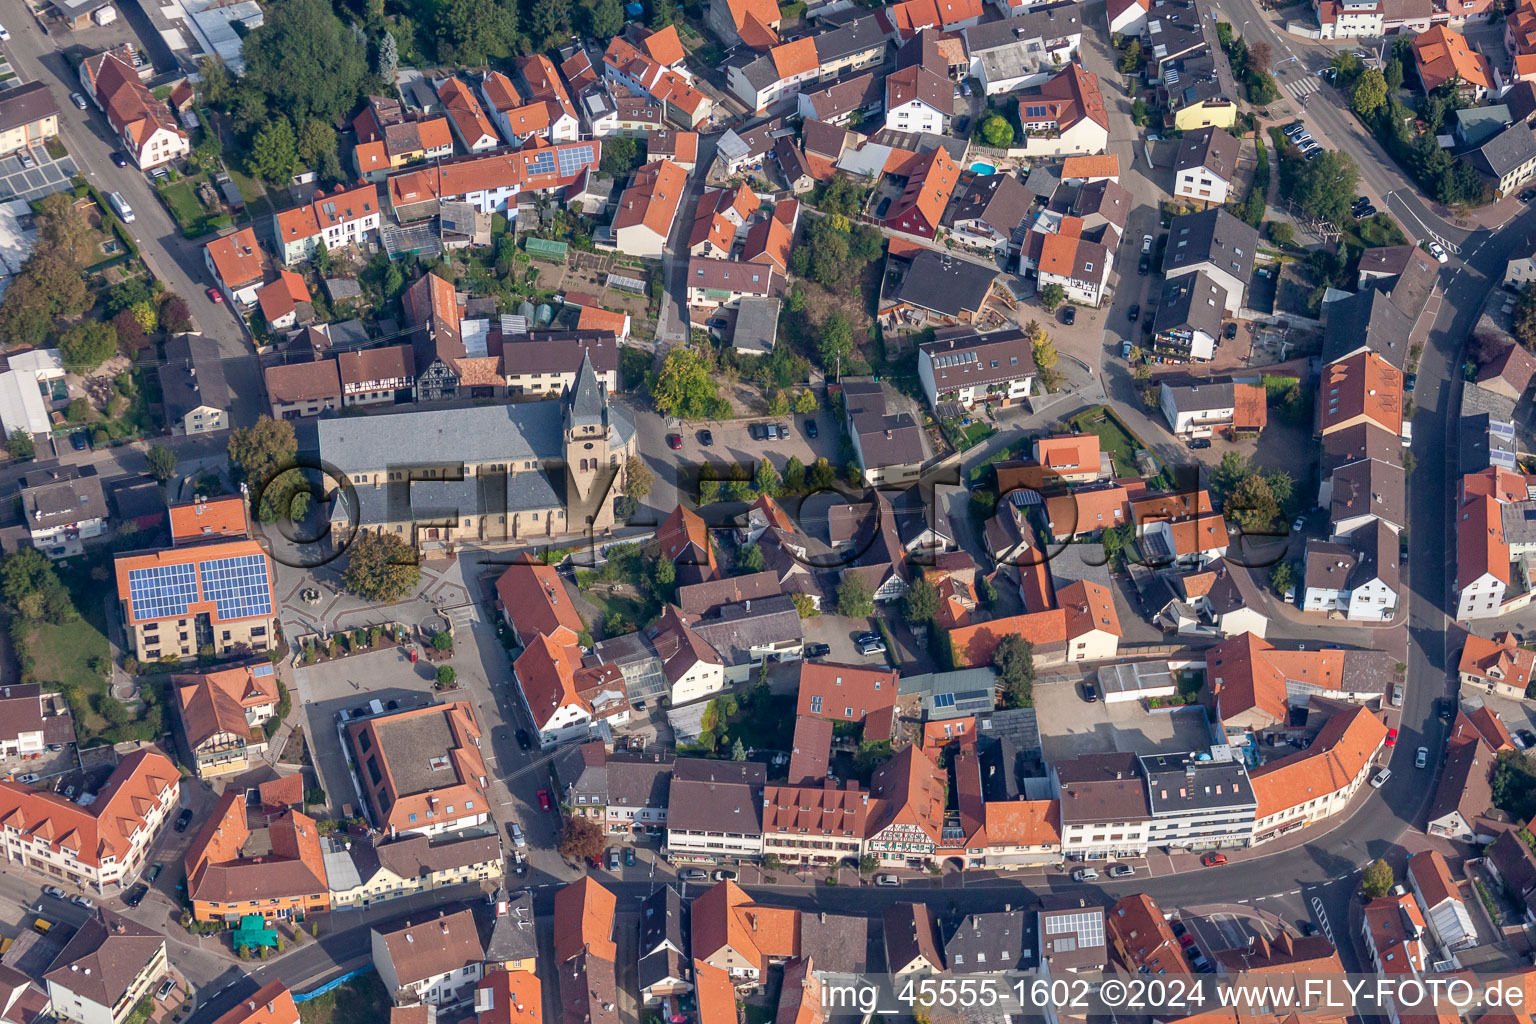 Vue aérienne de Sainte Cécile à Östringen dans le département Bade-Wurtemberg, Allemagne